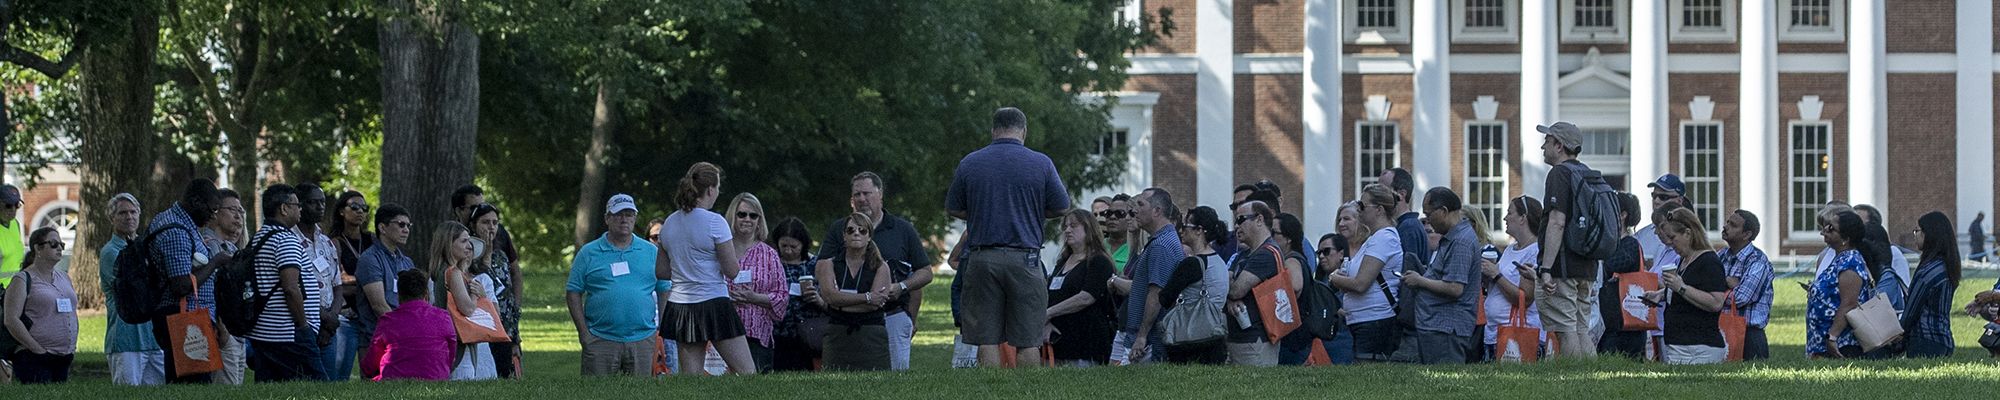 UVA Orientation group on lawn